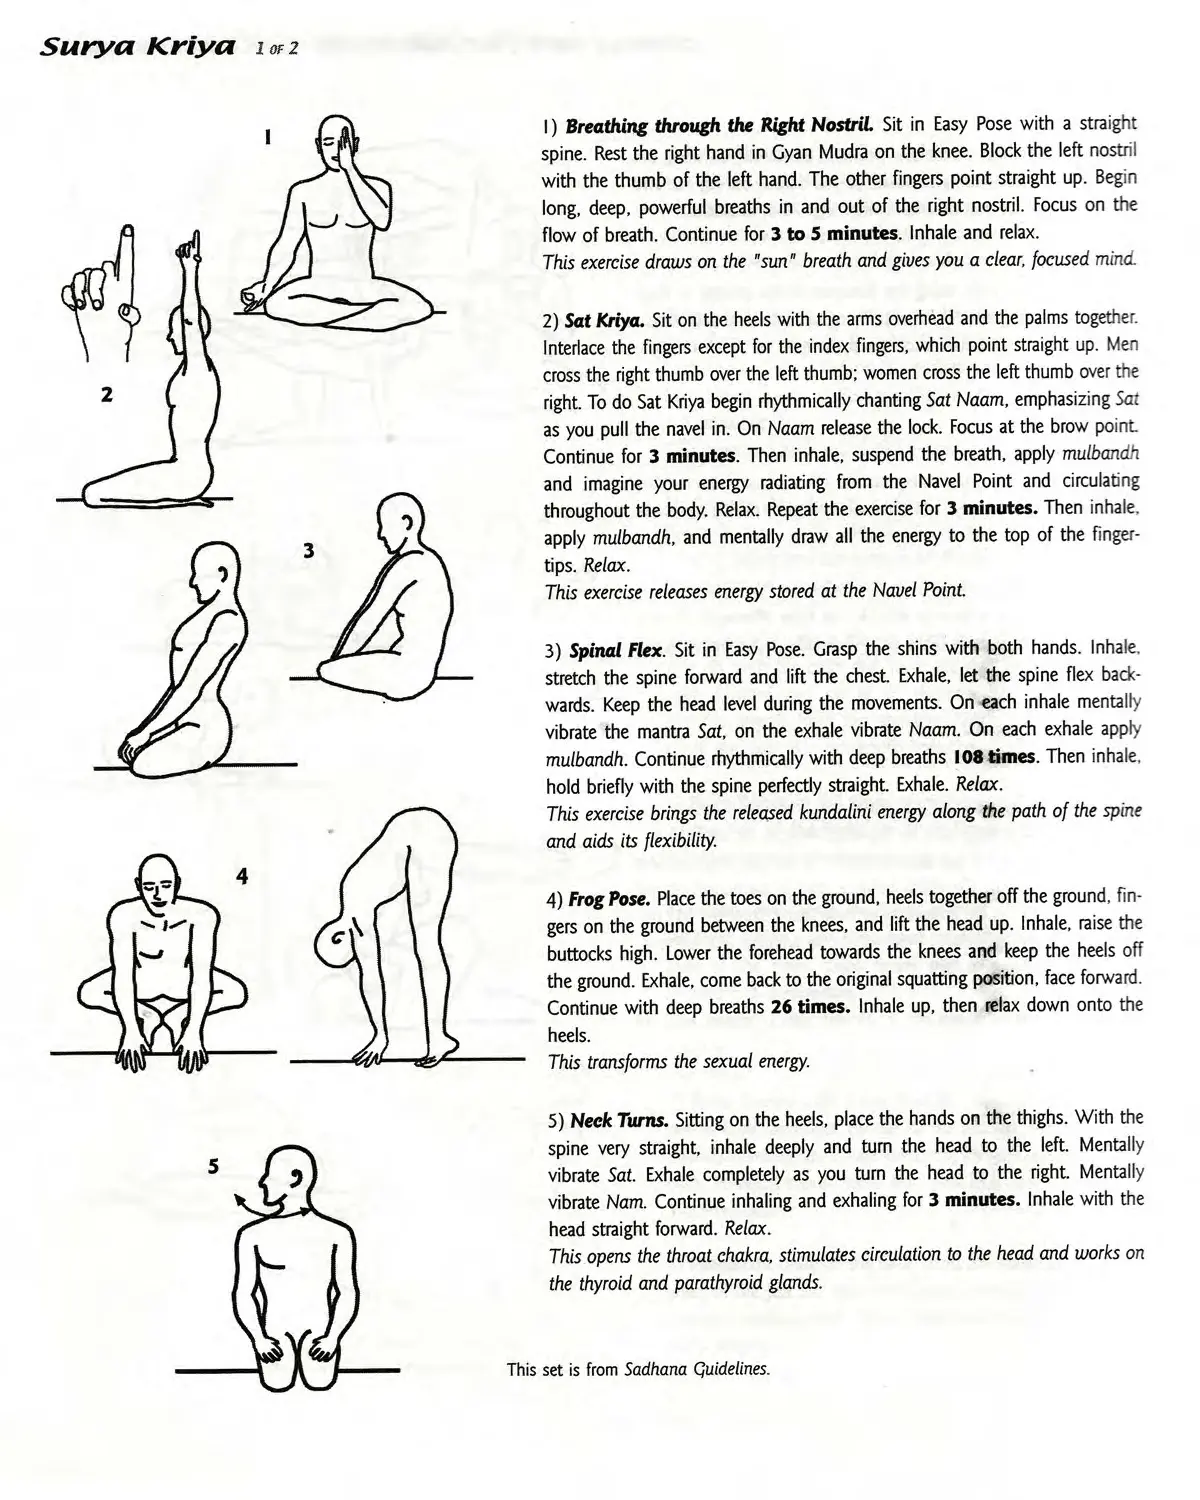 kriya yoga steps - What are the rules of Kriya Yoga